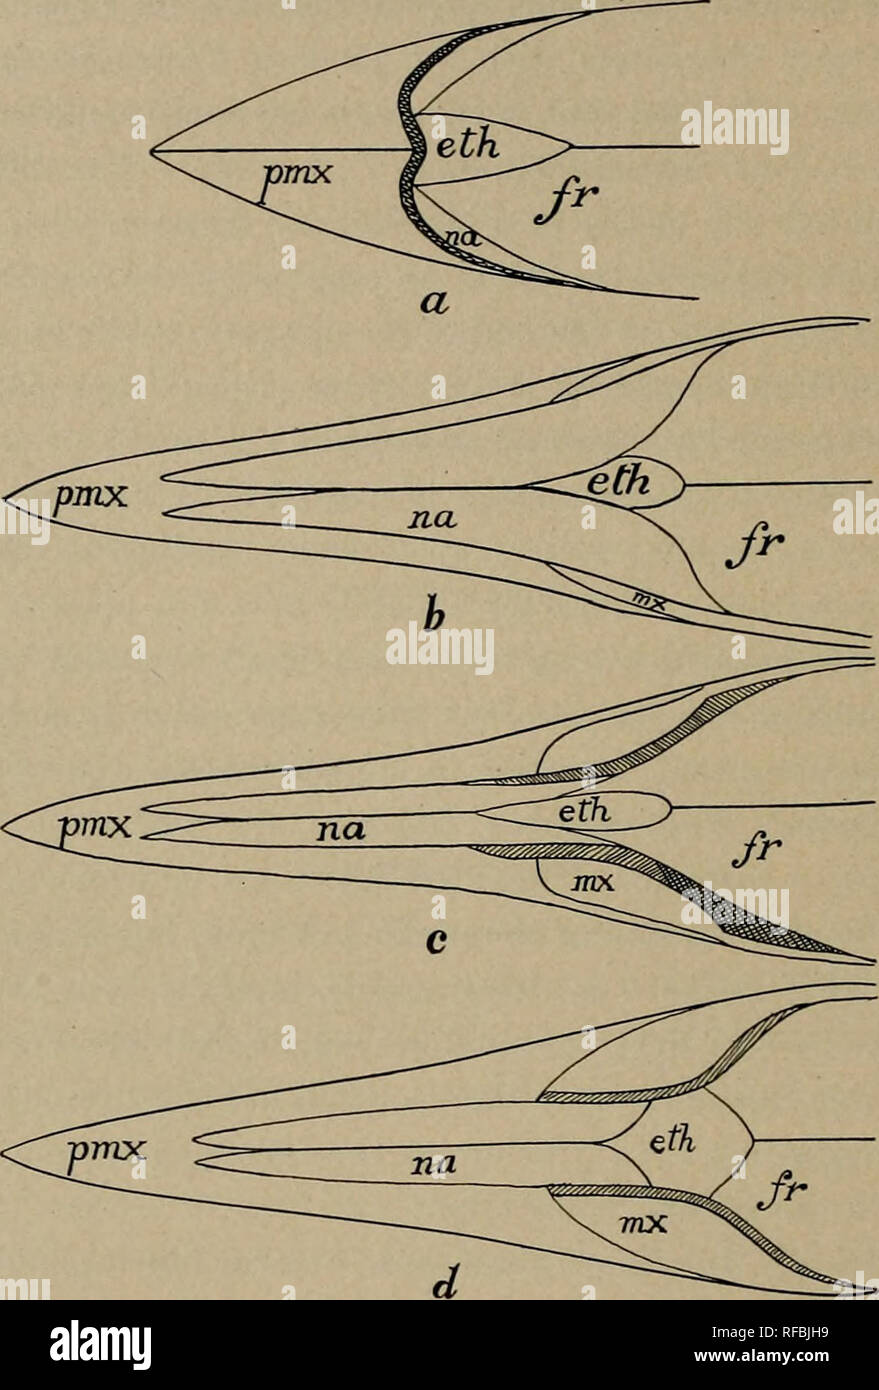 . Catalogo di pesci fossili nella Carnegie Museum. Pesci fossili. 322 memorie del Carnegie Museum. Gymnarchus, attraverso Mormyrus, fino alla estremamente organo specializzato di Gnatho- nemus. Fasi progressive di allungamento del rostro in scombroid pesci sono state evidenziate da Regan. I cambiamenti strutturali che hanno frequentato la formazione di un becco sono illustrate negli schemi seguenti:. Fig. 1. Diagramma che mostra la struttura del rostro in Acanthocybium (a), Histiophorus (b), Xiphias (c), e Xiphiorhynchus (d). pmx, praemaxillary; mx, mascellare; na, nasale; eth, sinusite etmoide; fr, fr Foto Stock